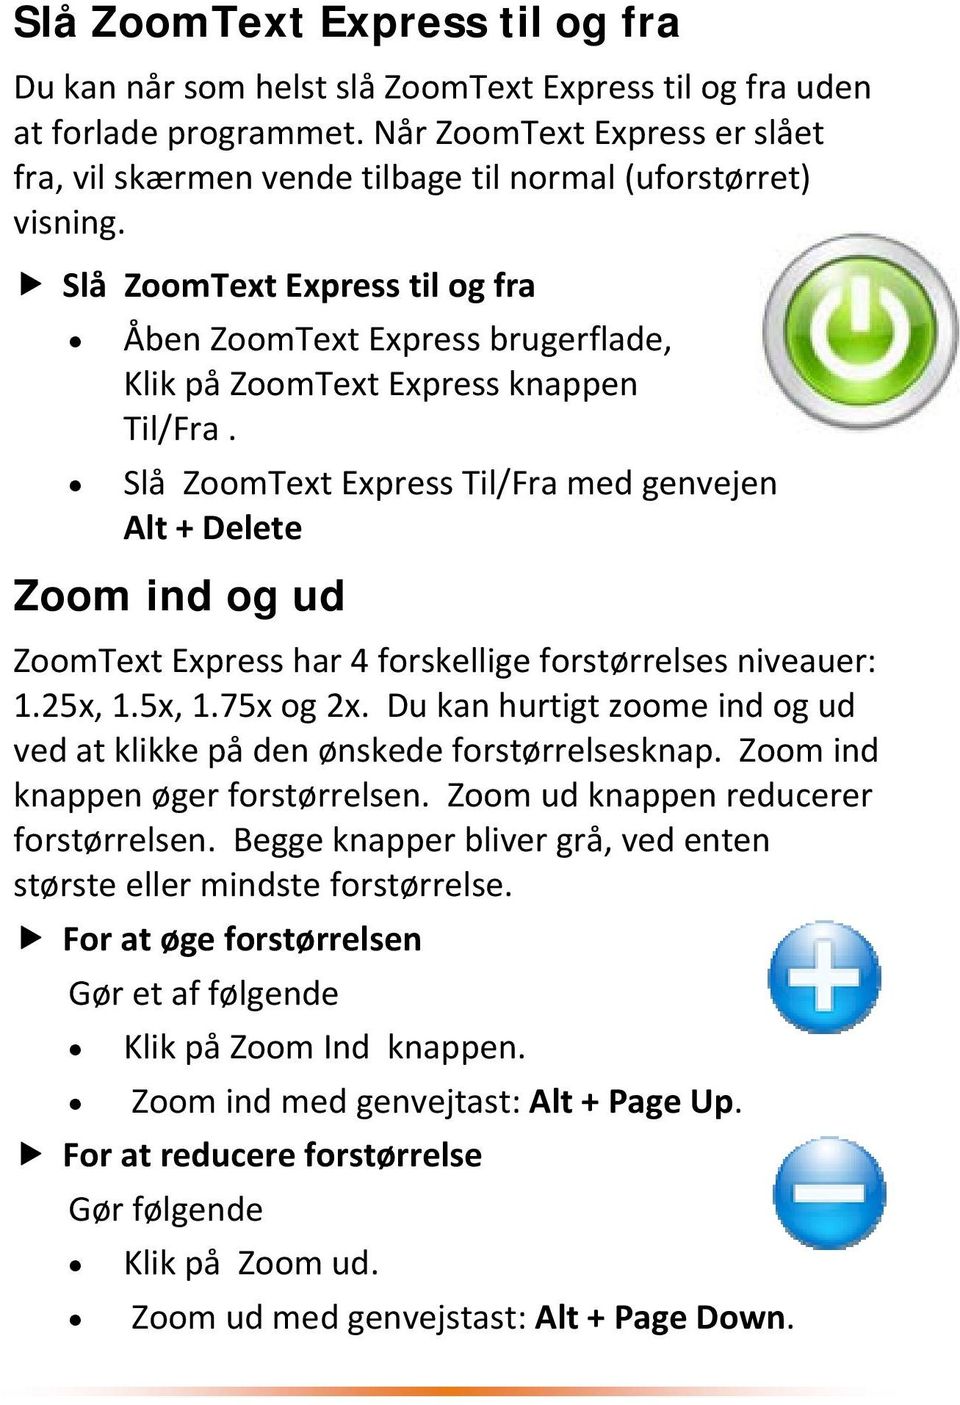 Slå ZoomText Express til og fra Åben ZoomText Express brugerflade, Klik på ZoomText Express knappen Til/Fra.